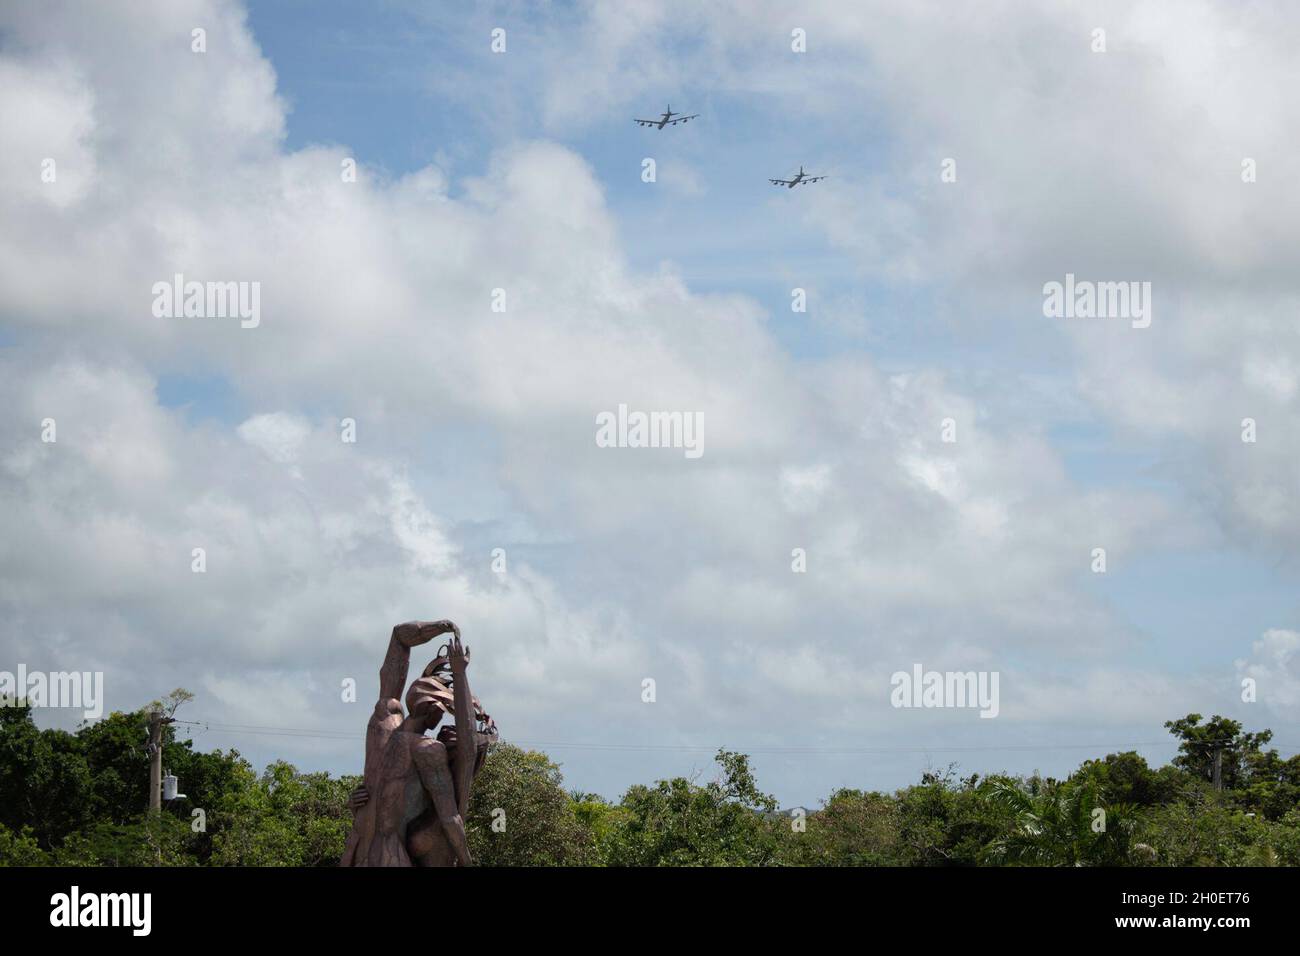 Dos de las Fuerzas Aéreas B-52H de los Estados Unidos de América vuelan cerca de la Base de la Fuerza Aérea de Andersen, Guam, en apoyo de un despliegue de la Fuerza de Tarea Bomber, 15 de febrero de 2021. Las implementaciones de BTF permiten a los equipos mantener un alto estado de preparación y competencia, y validar nuestra capacidad de huelga global siempre lista. Foto de stock